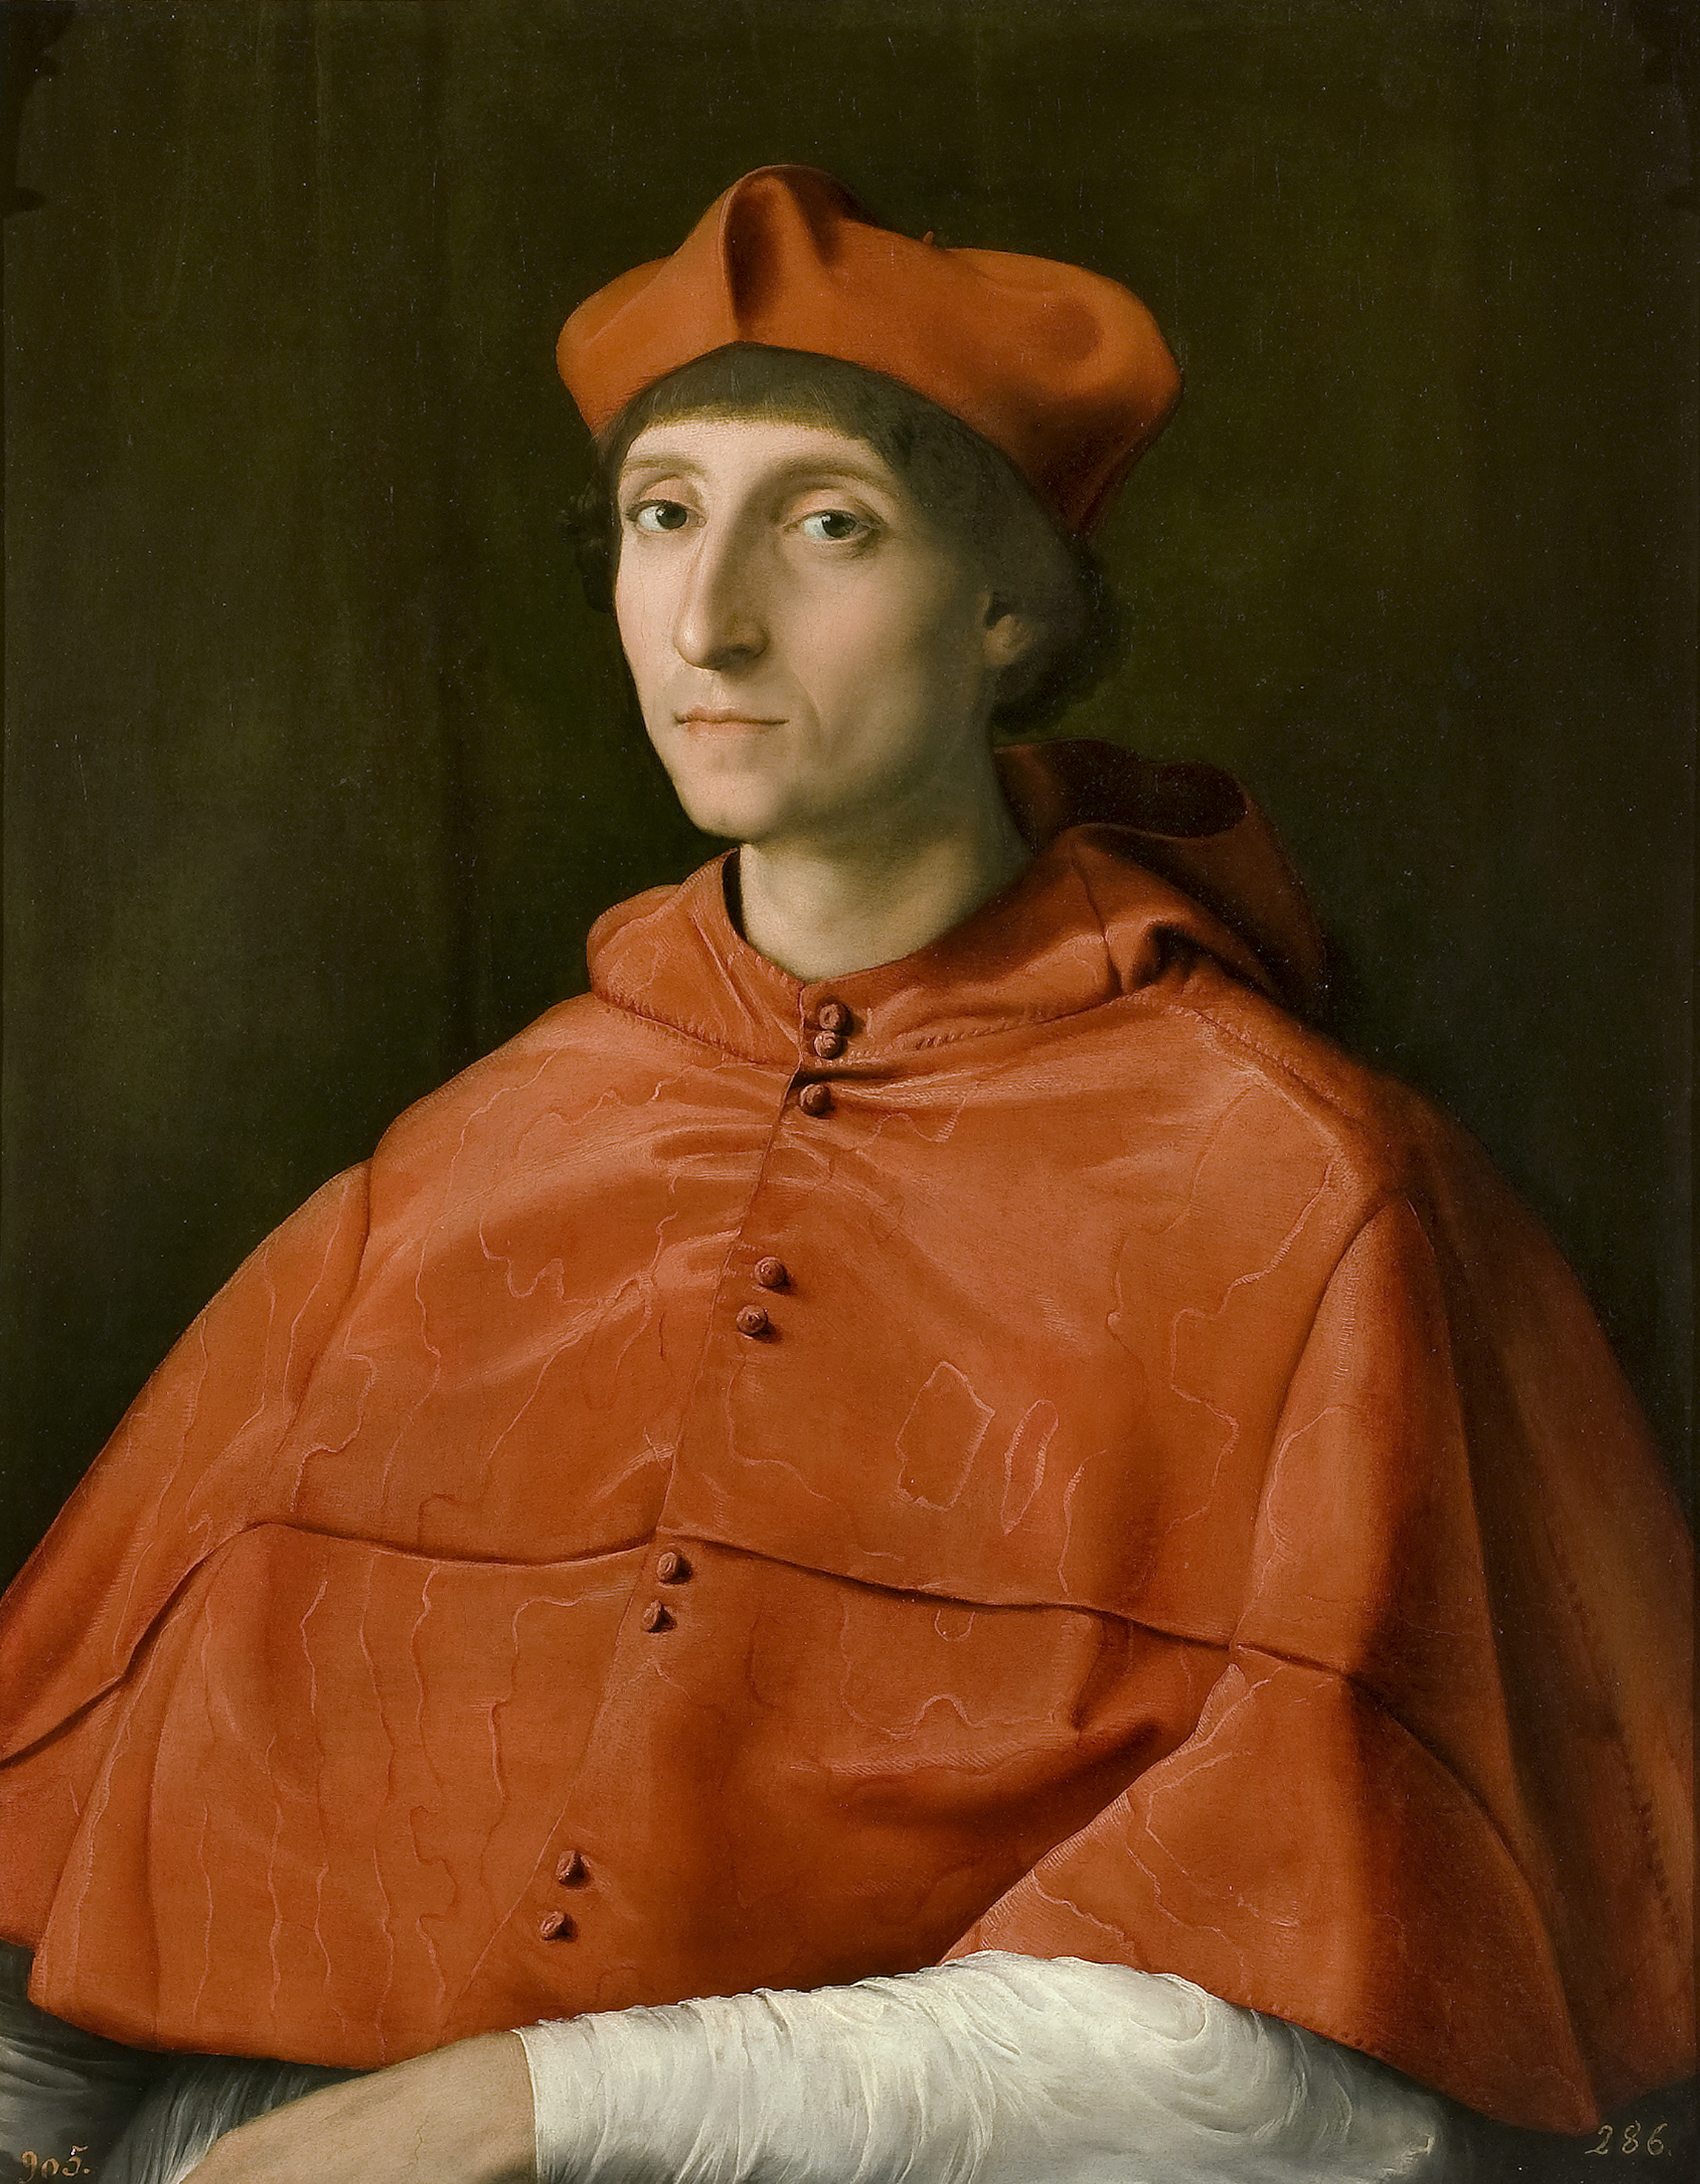 The Cardinal, Raphael